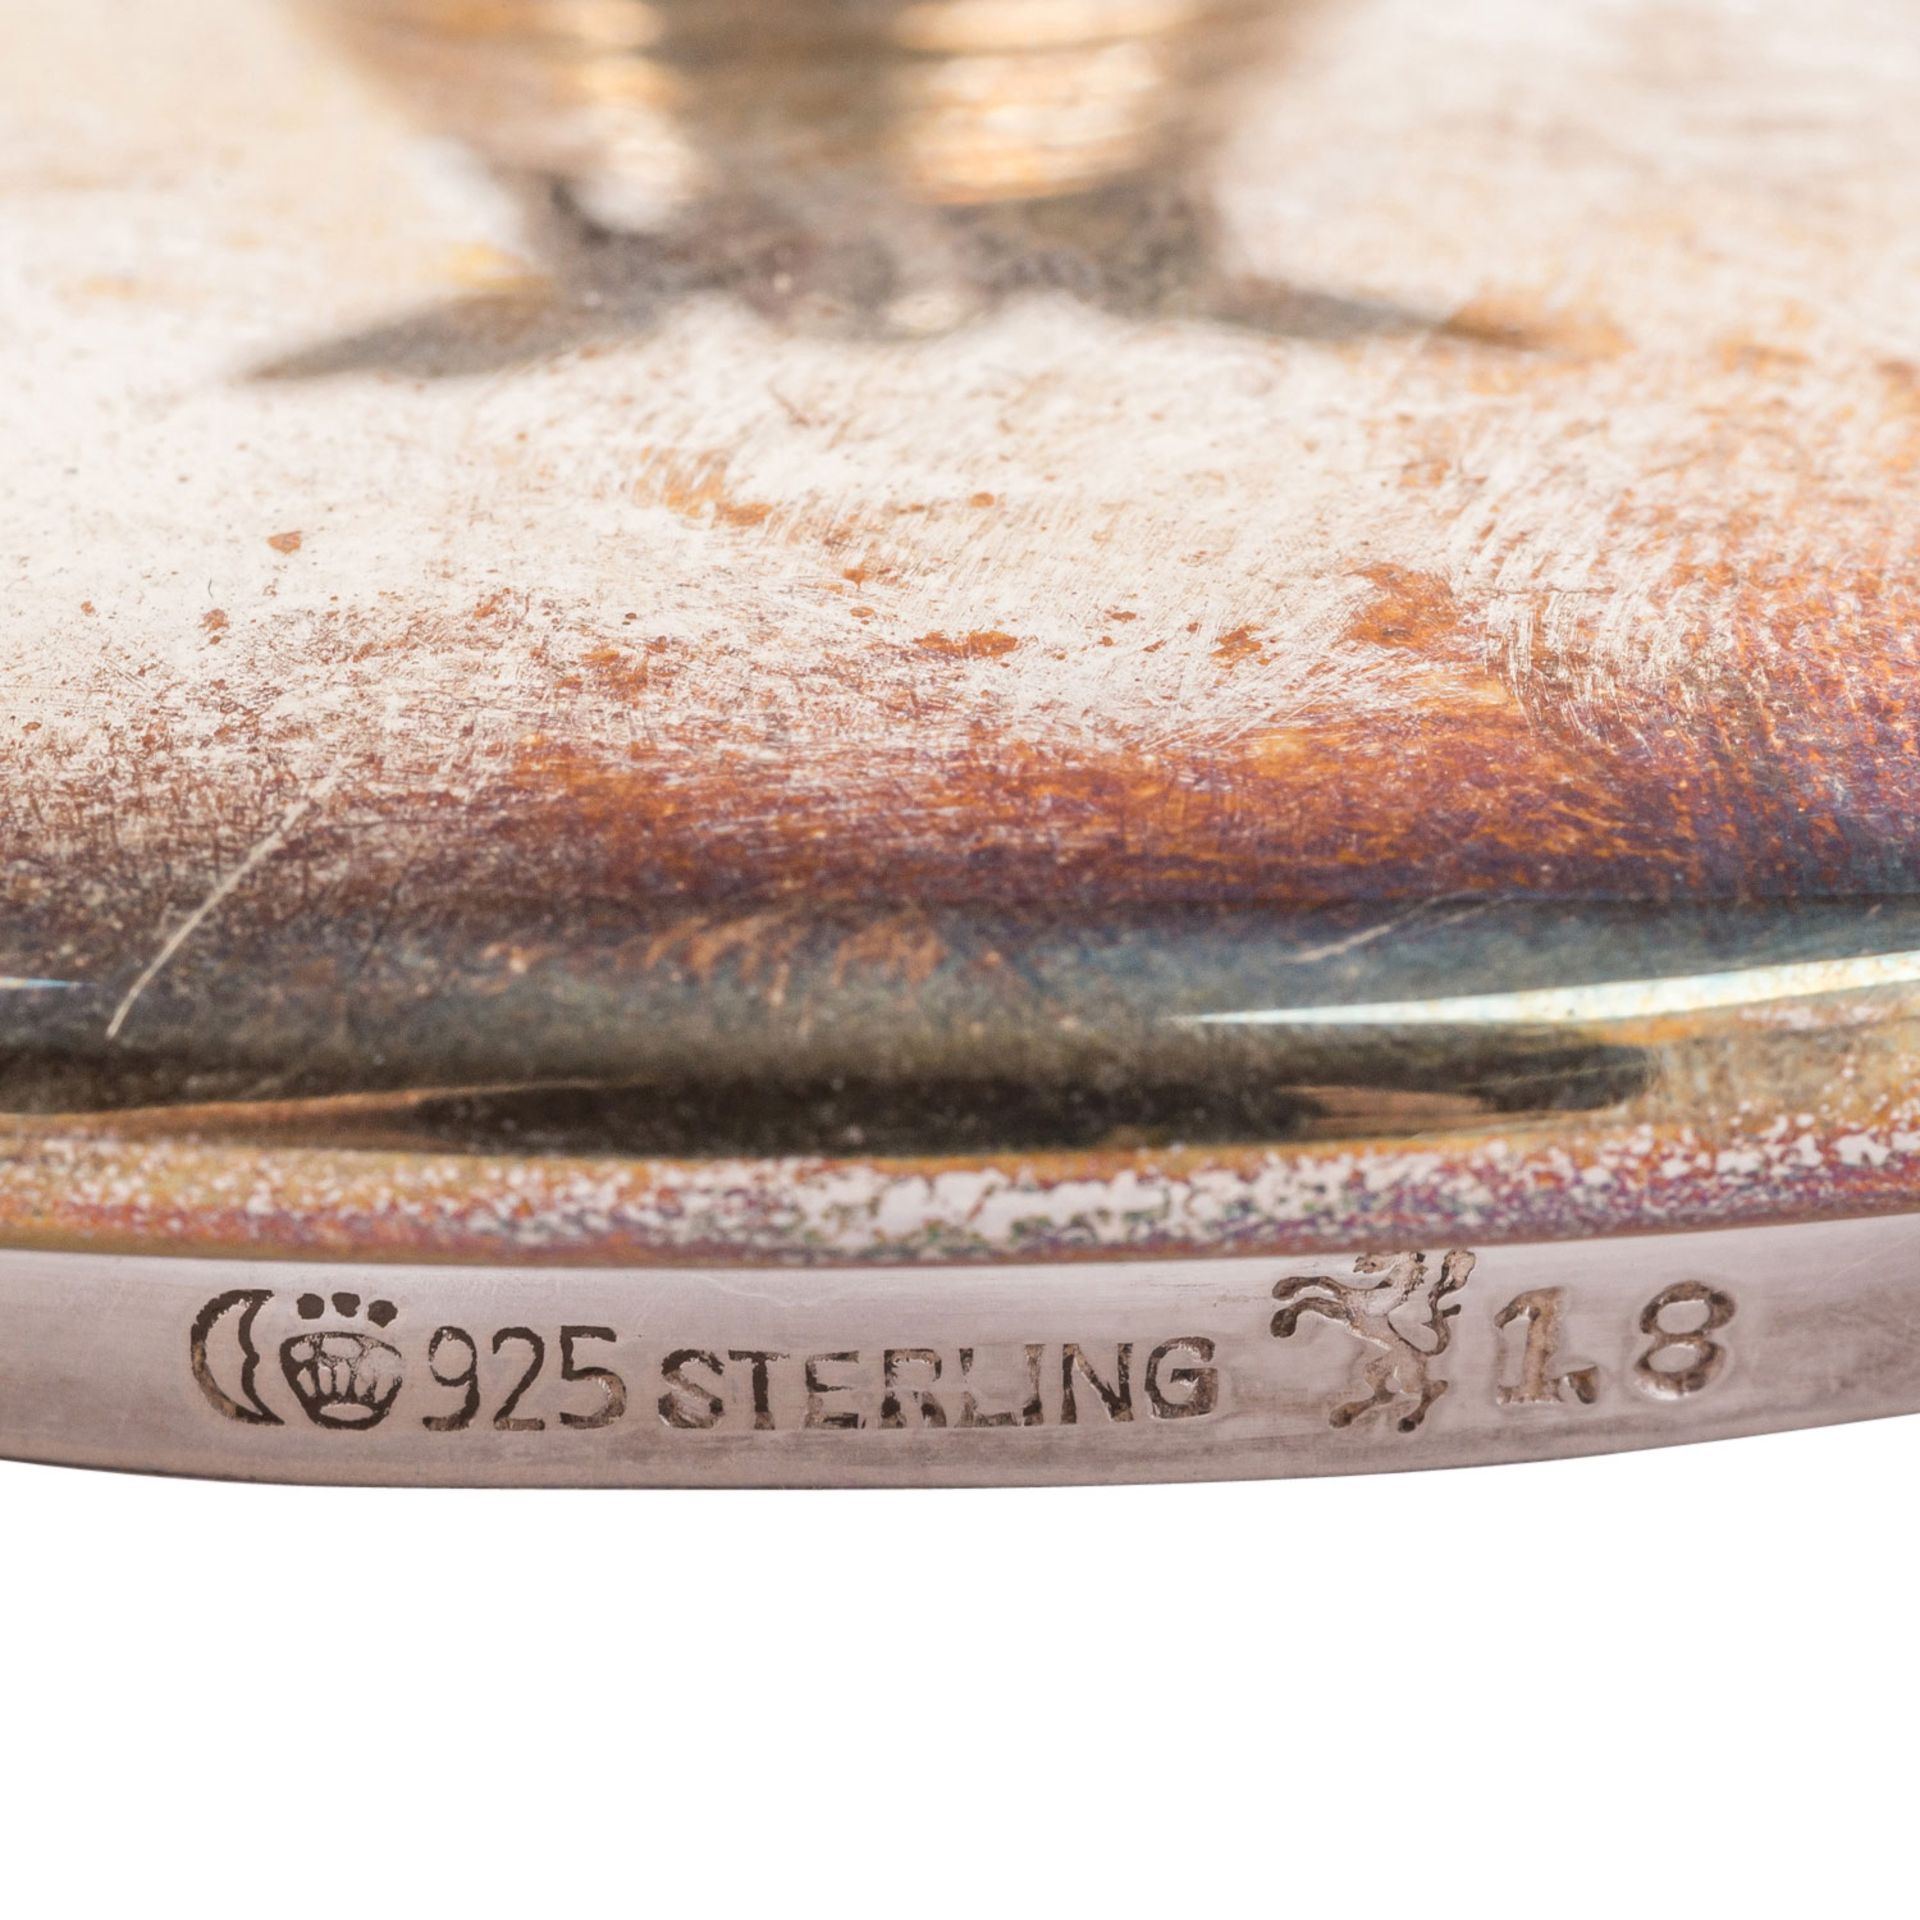 GEBRÜDER KÜHN "Set mit drei Gläsern für Marmelade und Honig" 925er Silber. - Image 7 of 7